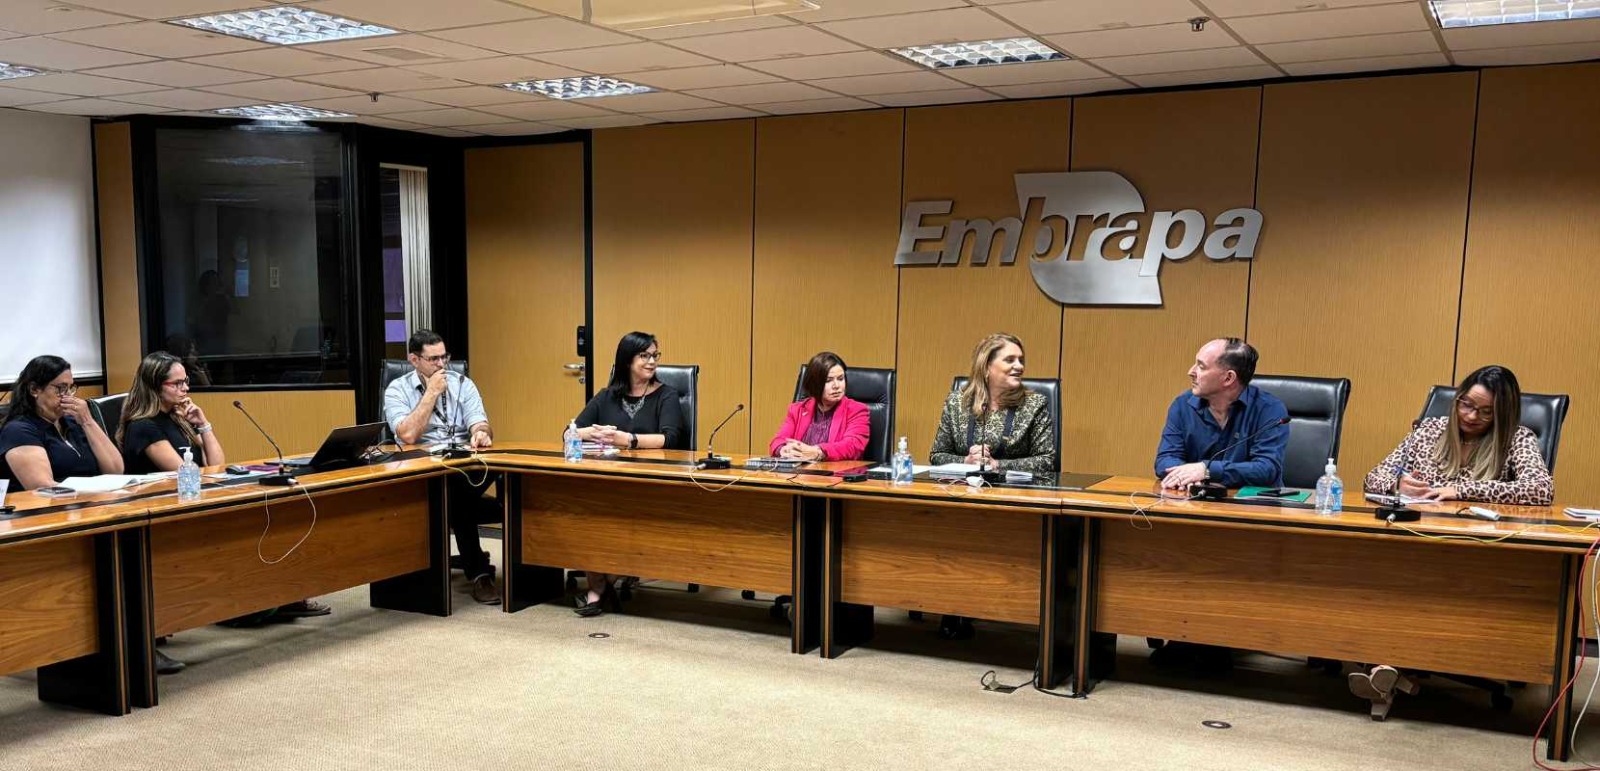 Reunião na Embrapa com a diretoria executiva. As pessoas estão na mesa e temos o símbolo da Embrapa em prateado em uma parede de madeira palha.